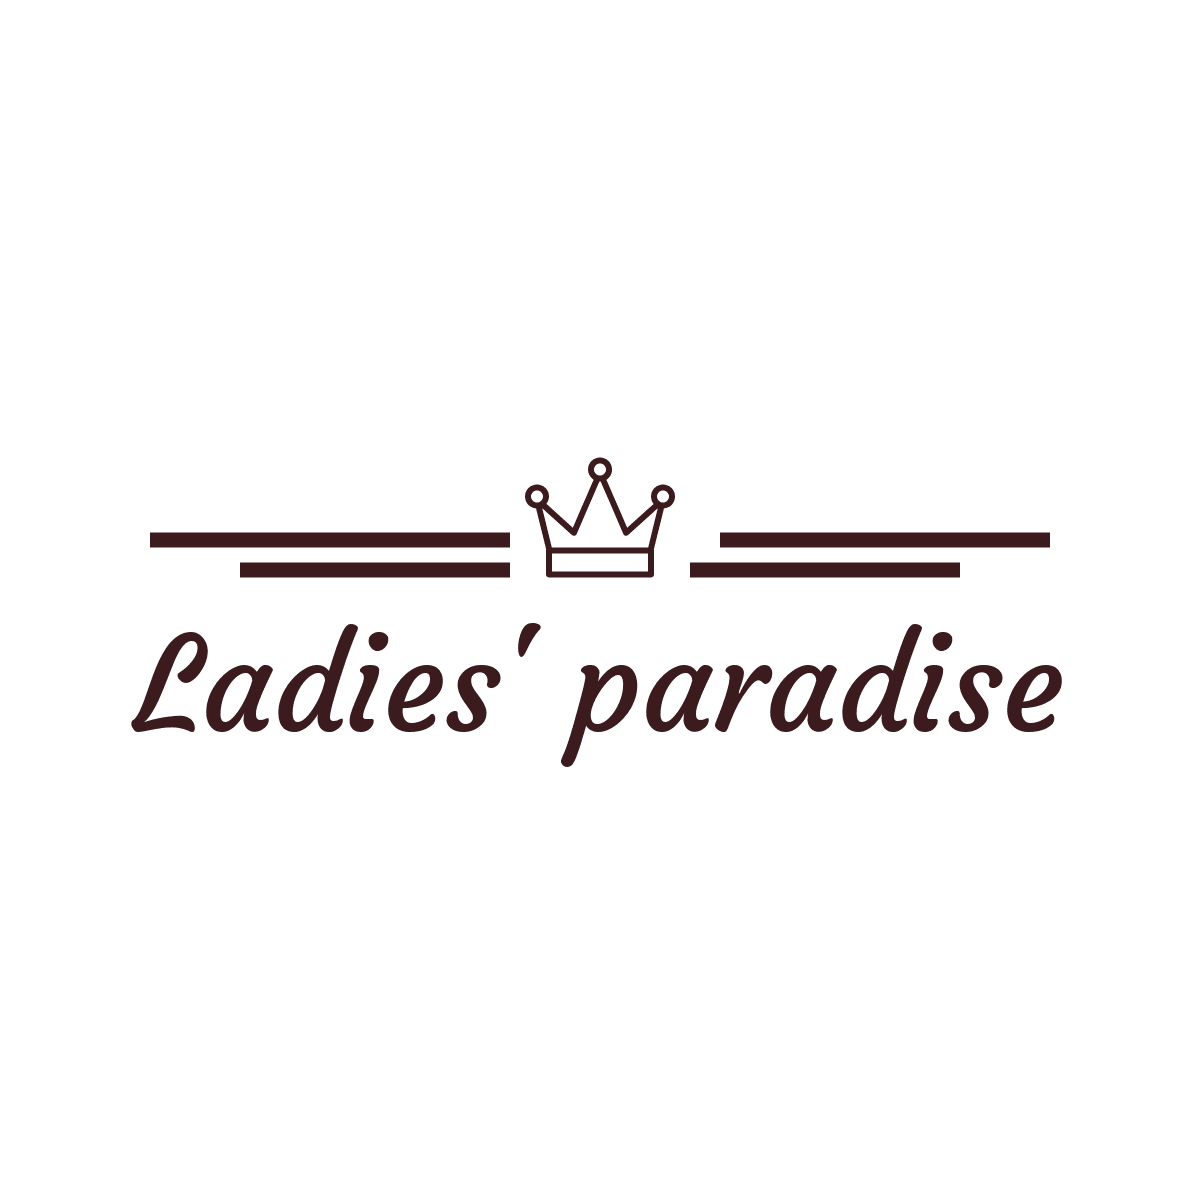 Ladies' paradise